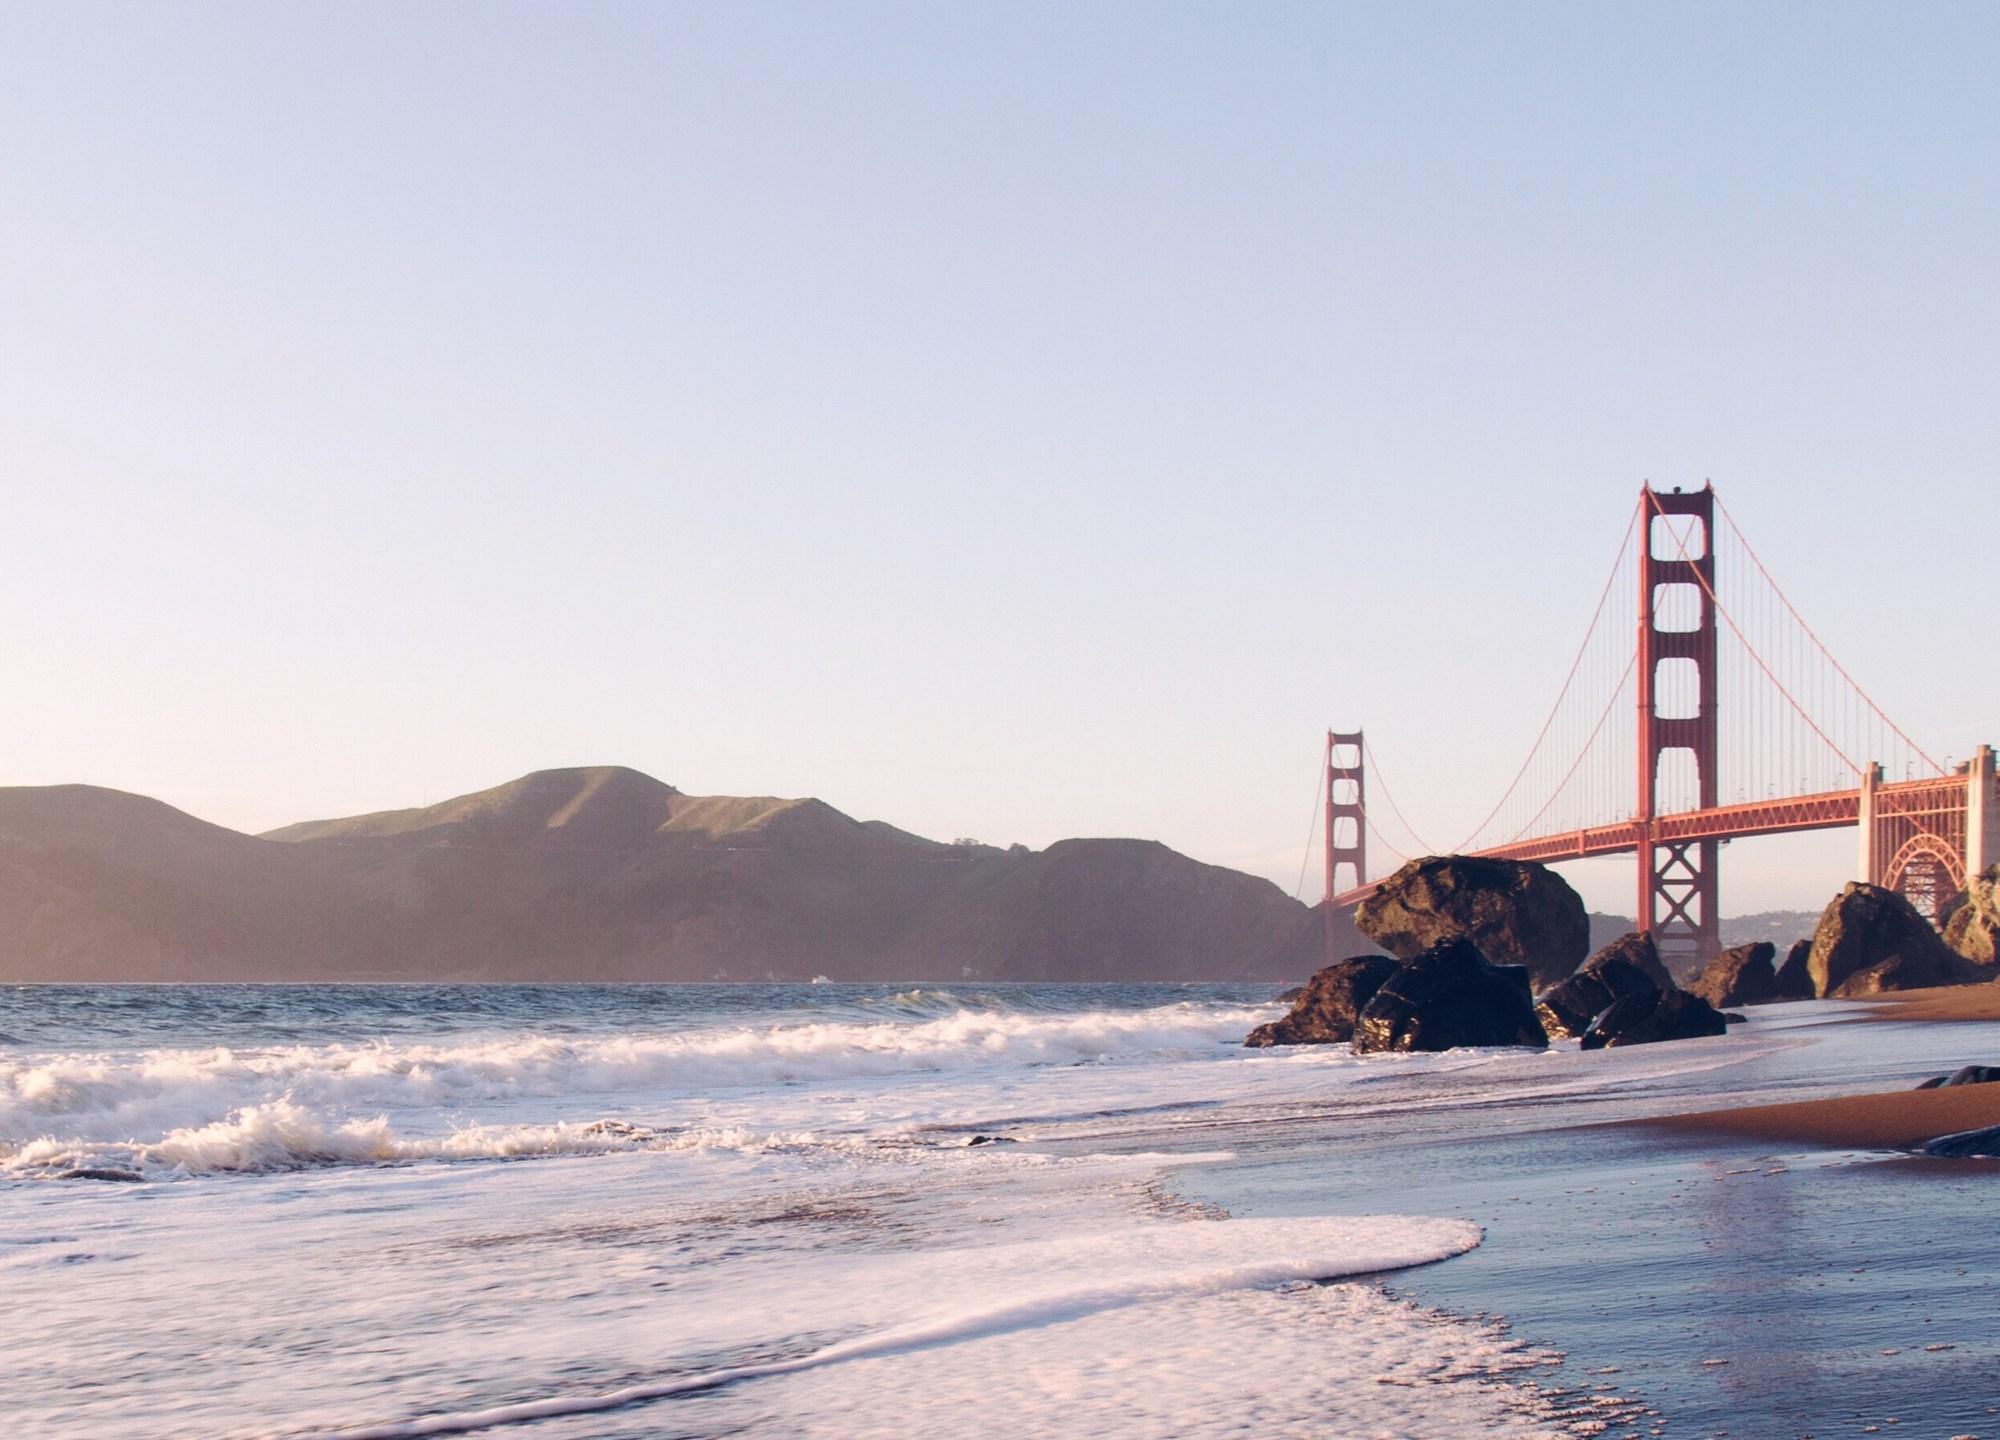 Golden Gate Bridge from the Beach 21:9 Wallpaper. Ultrawide